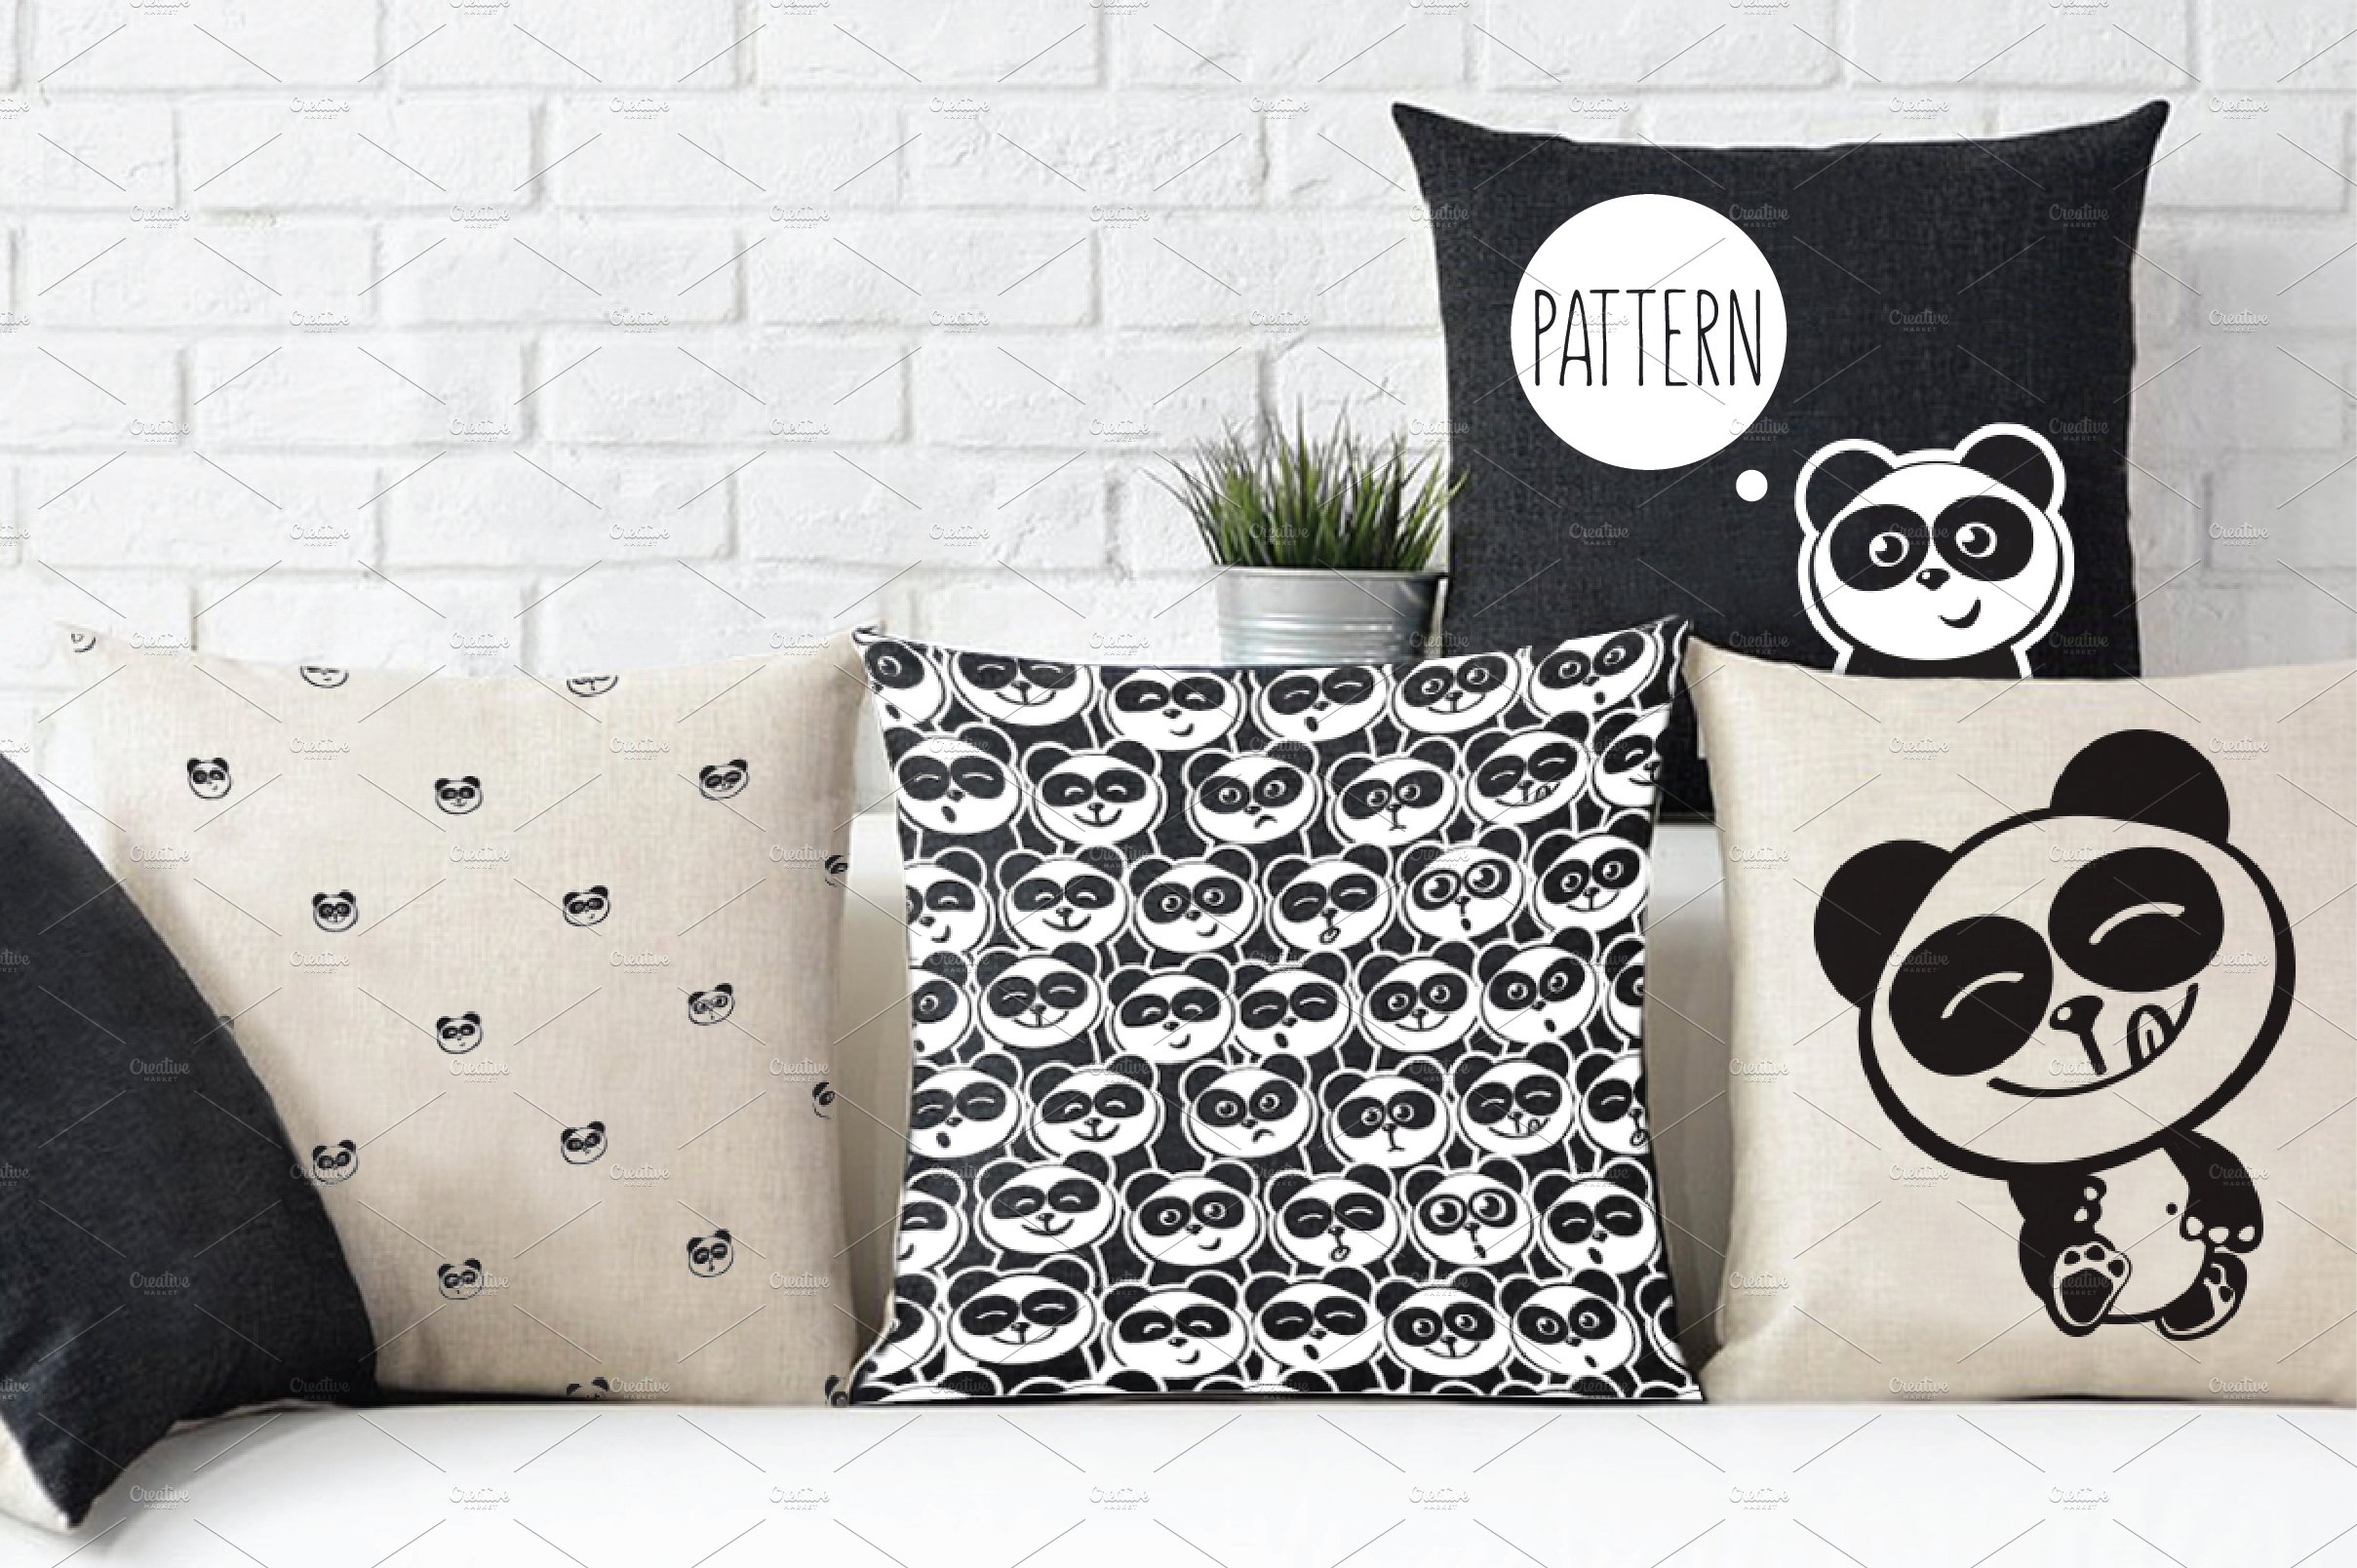 Happy panda (2 sets + 4 pattern) preview image.